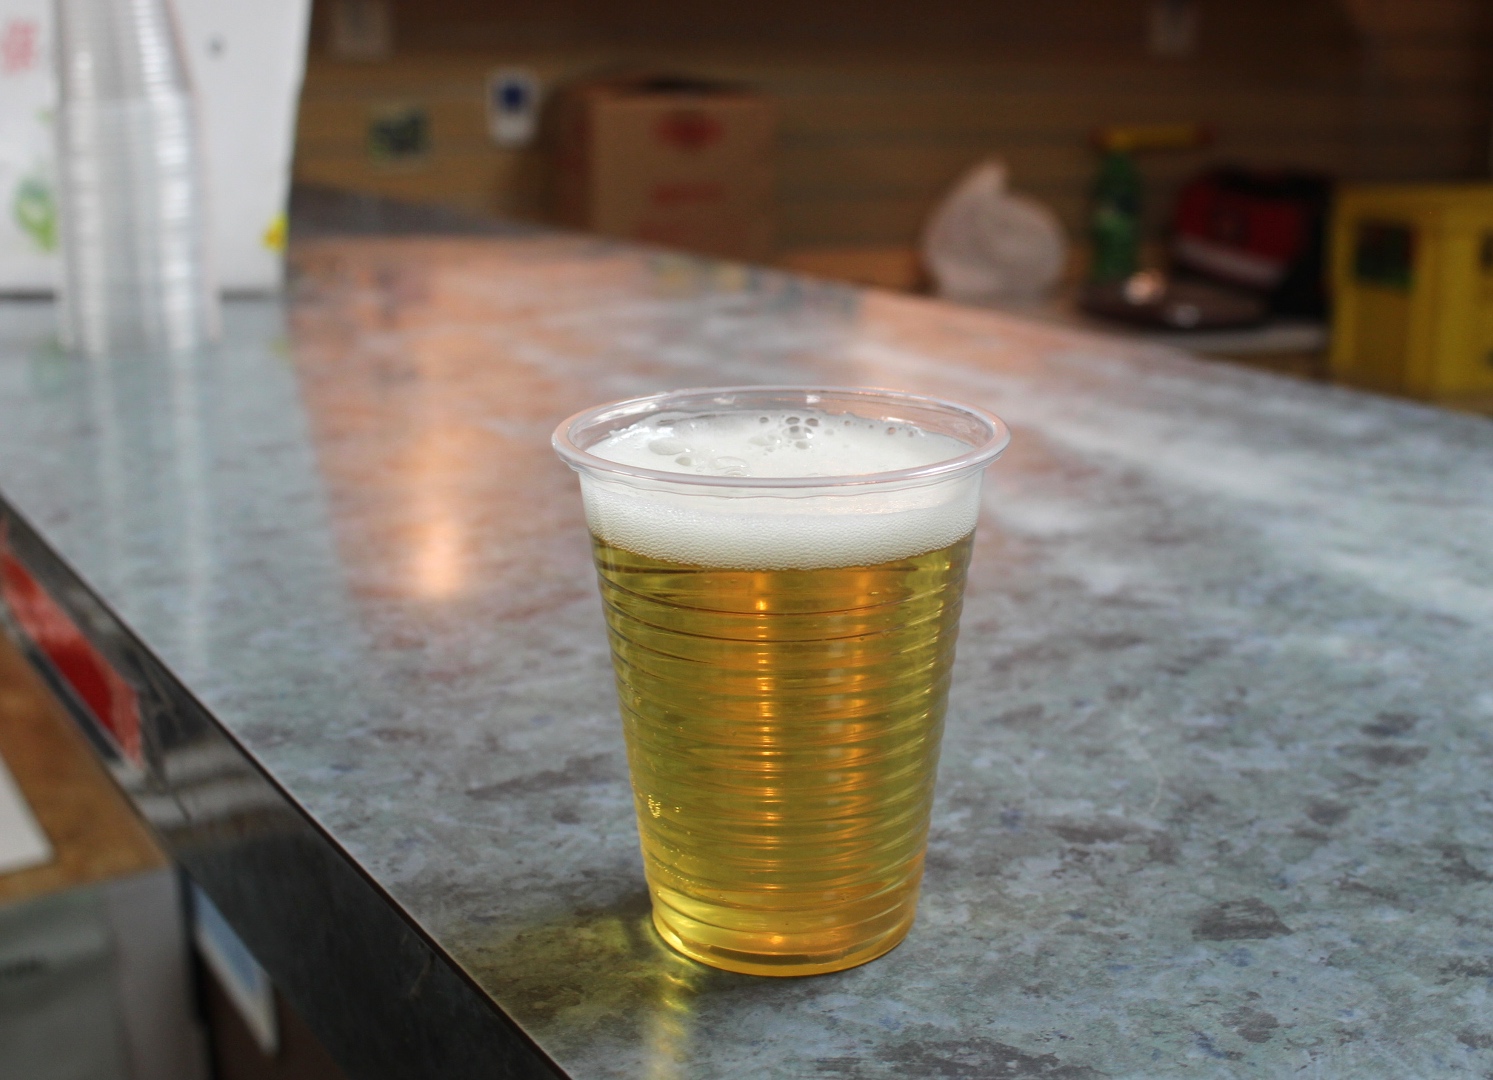 竹南啤酒廠 好拍的超大啤酒桶。免費啤酒隨你喝到飽